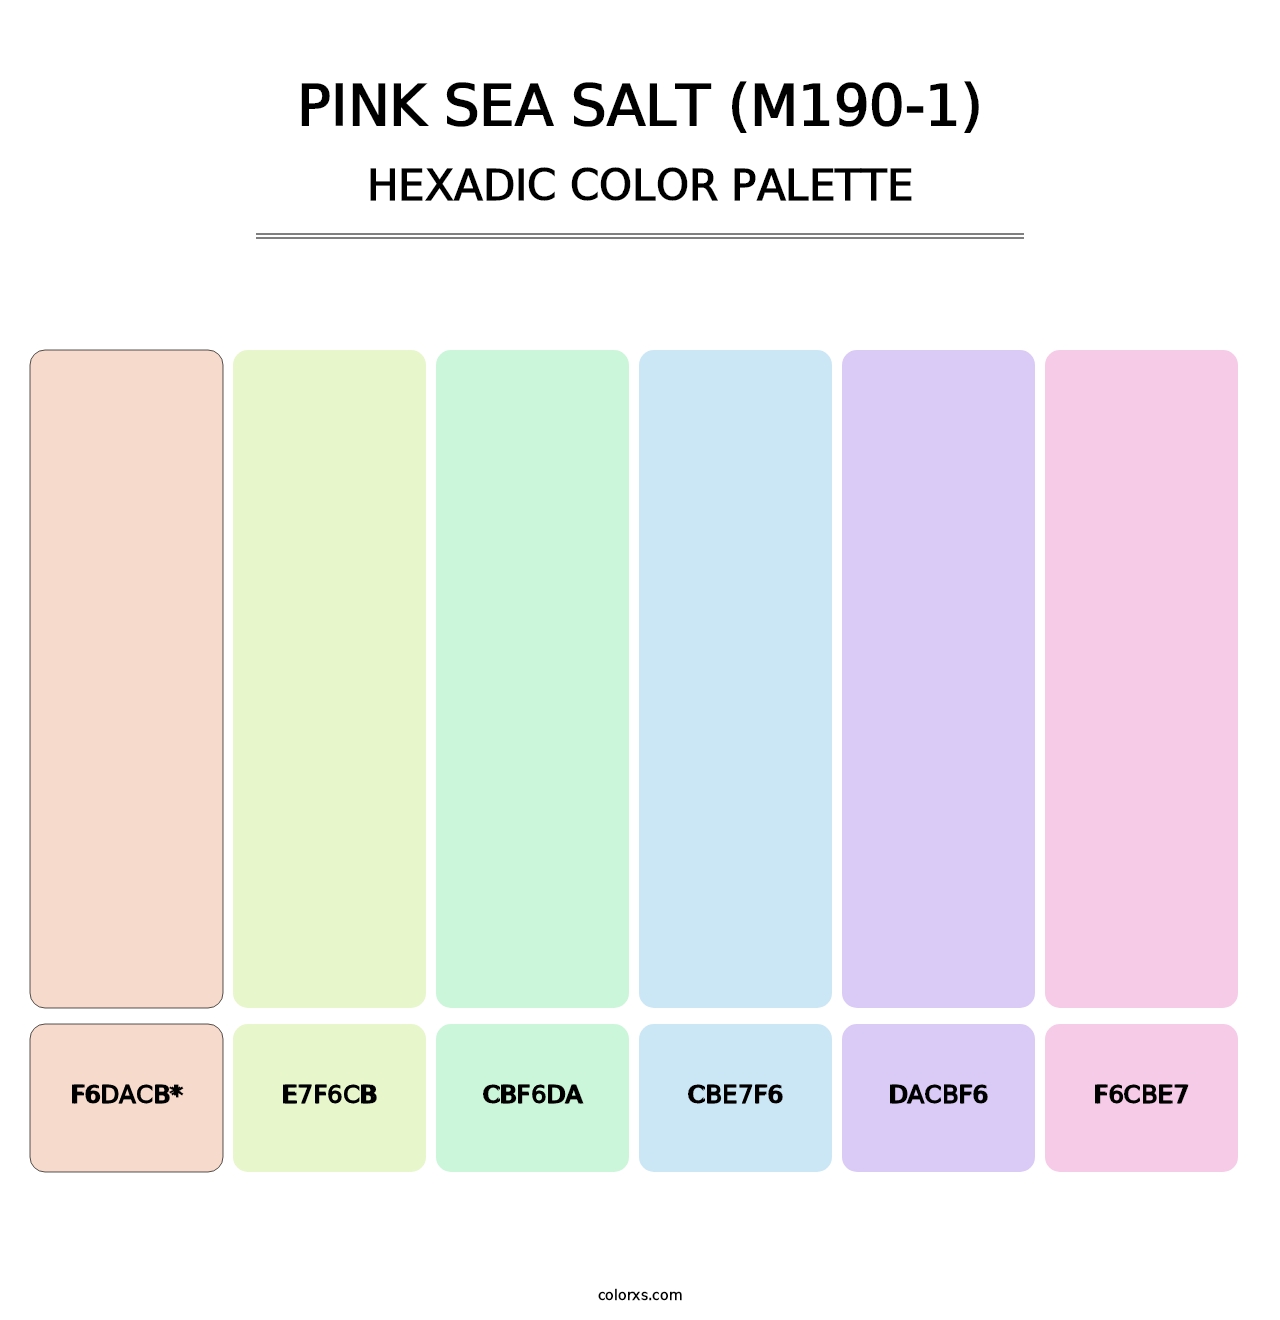 Pink Sea Salt (M190-1) - Hexadic Color Palette